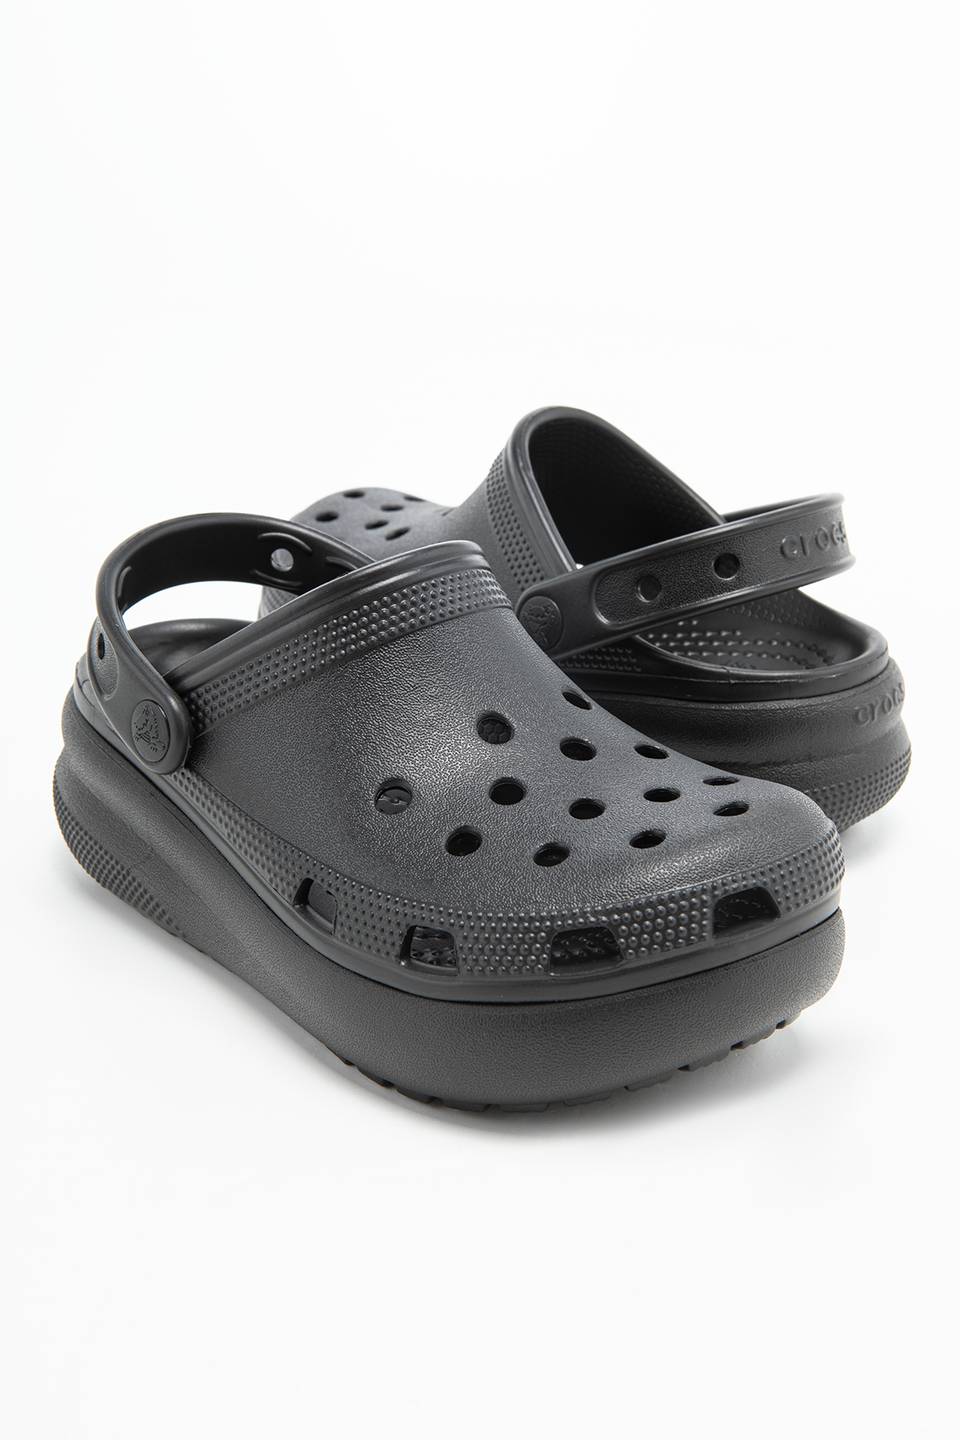 Klapki Crocs BLACK 207708-001